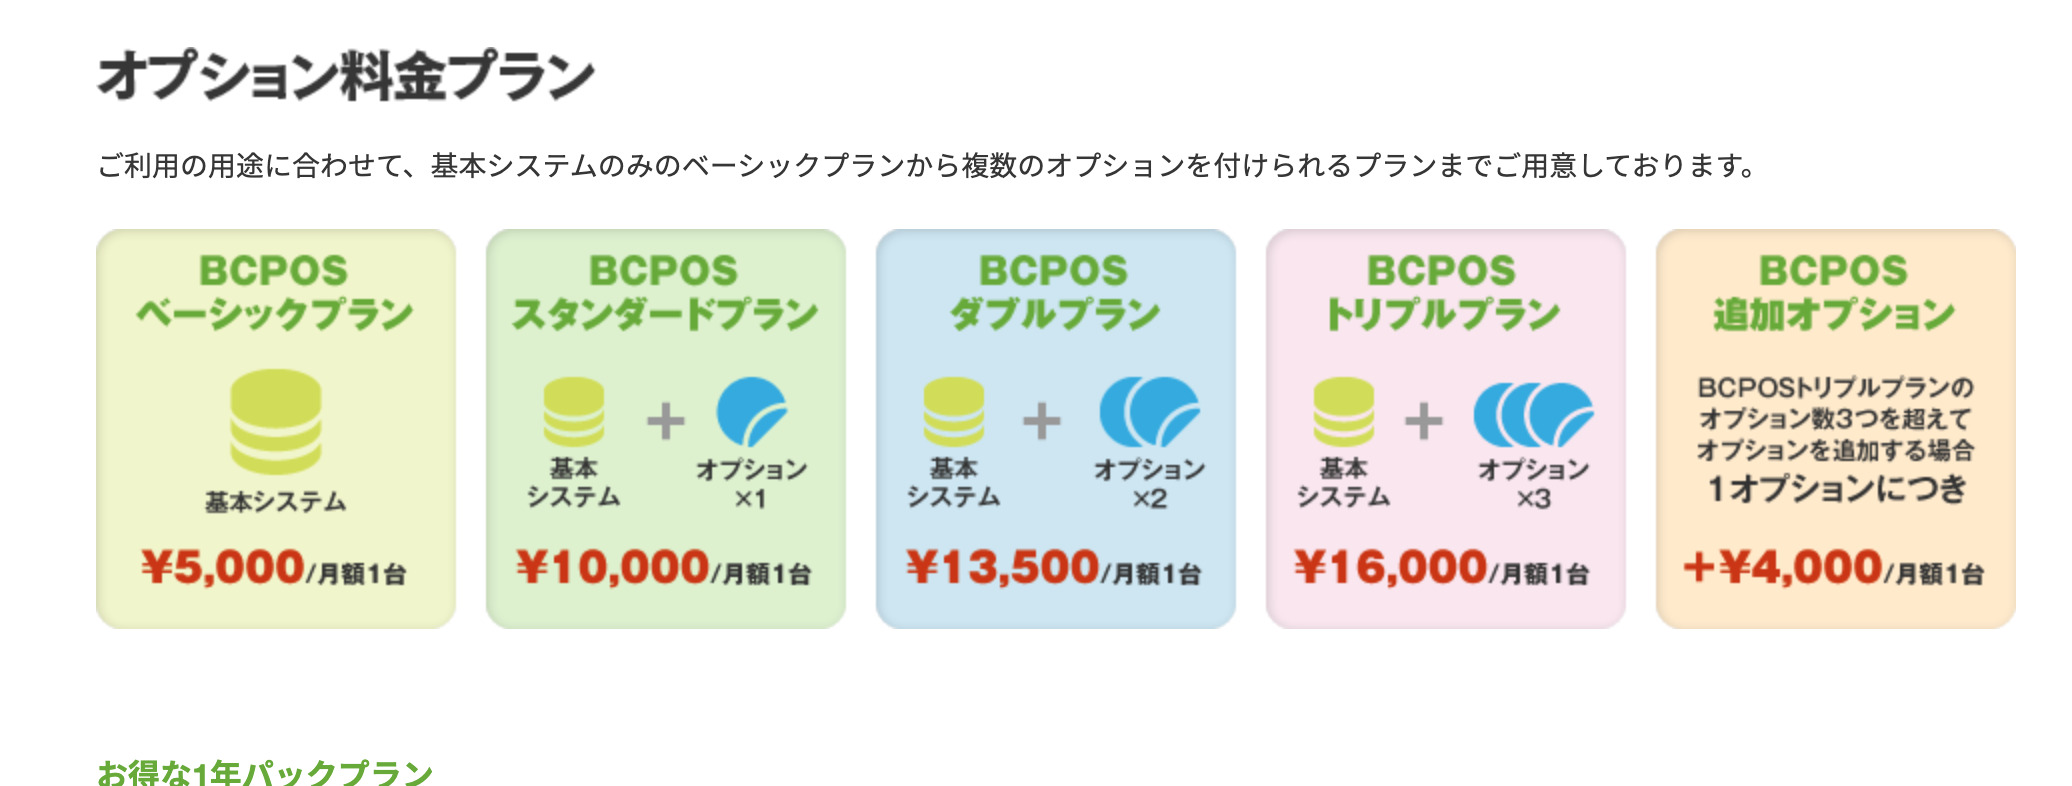 BCPOS価格